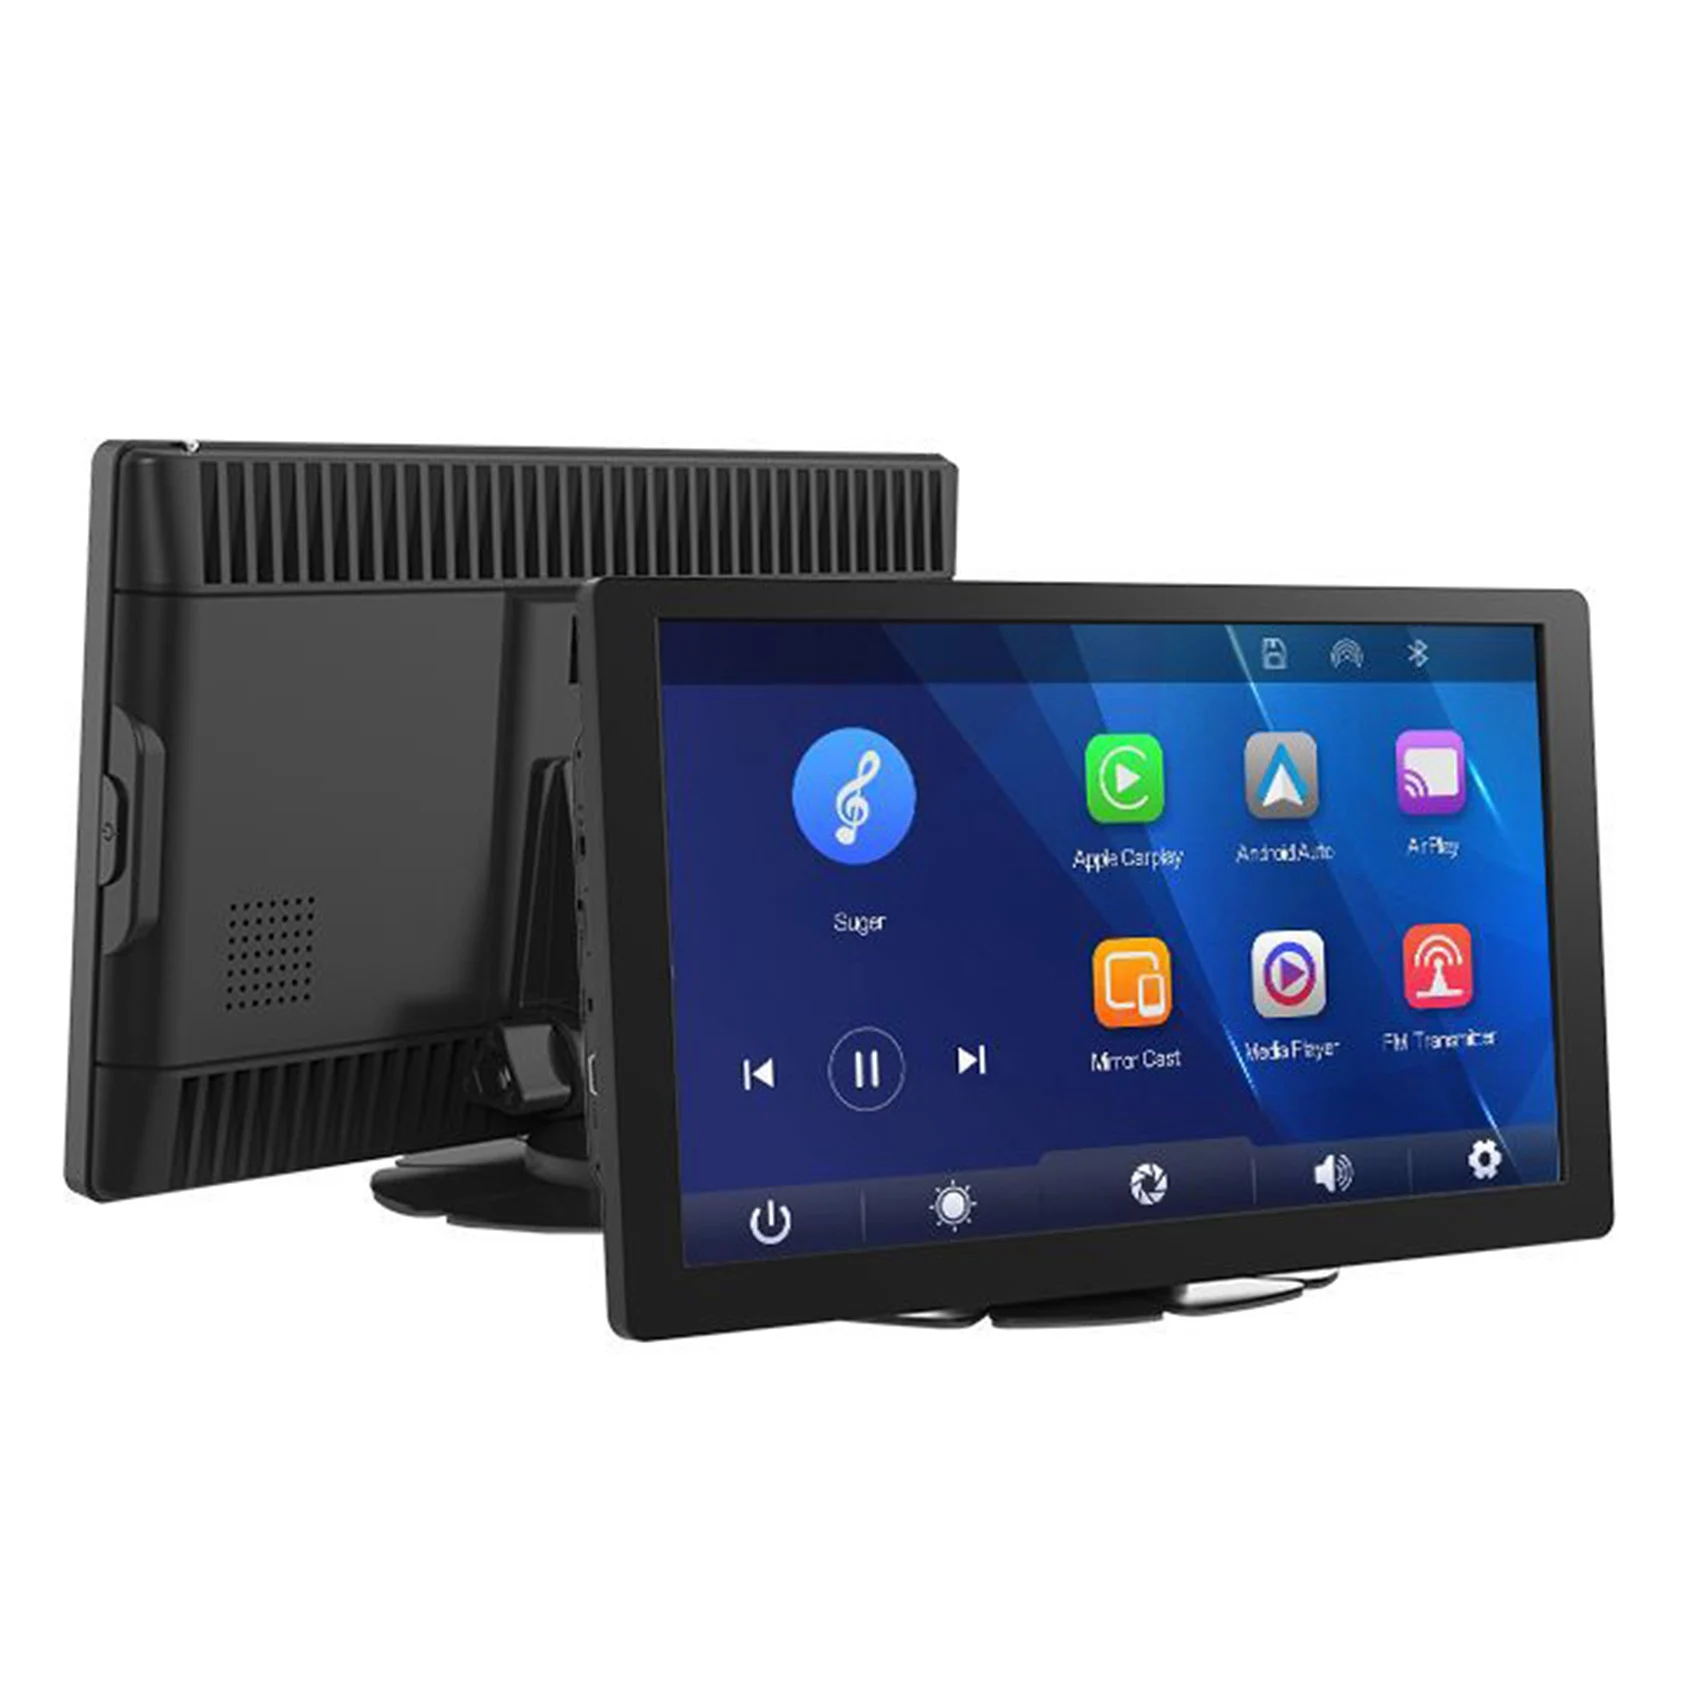 

9 дюймовый сенсорный экран Carplay беспроводной CarPlay Android Авто Авторадио WIFI Bluetooth видео мультимедийный плеер